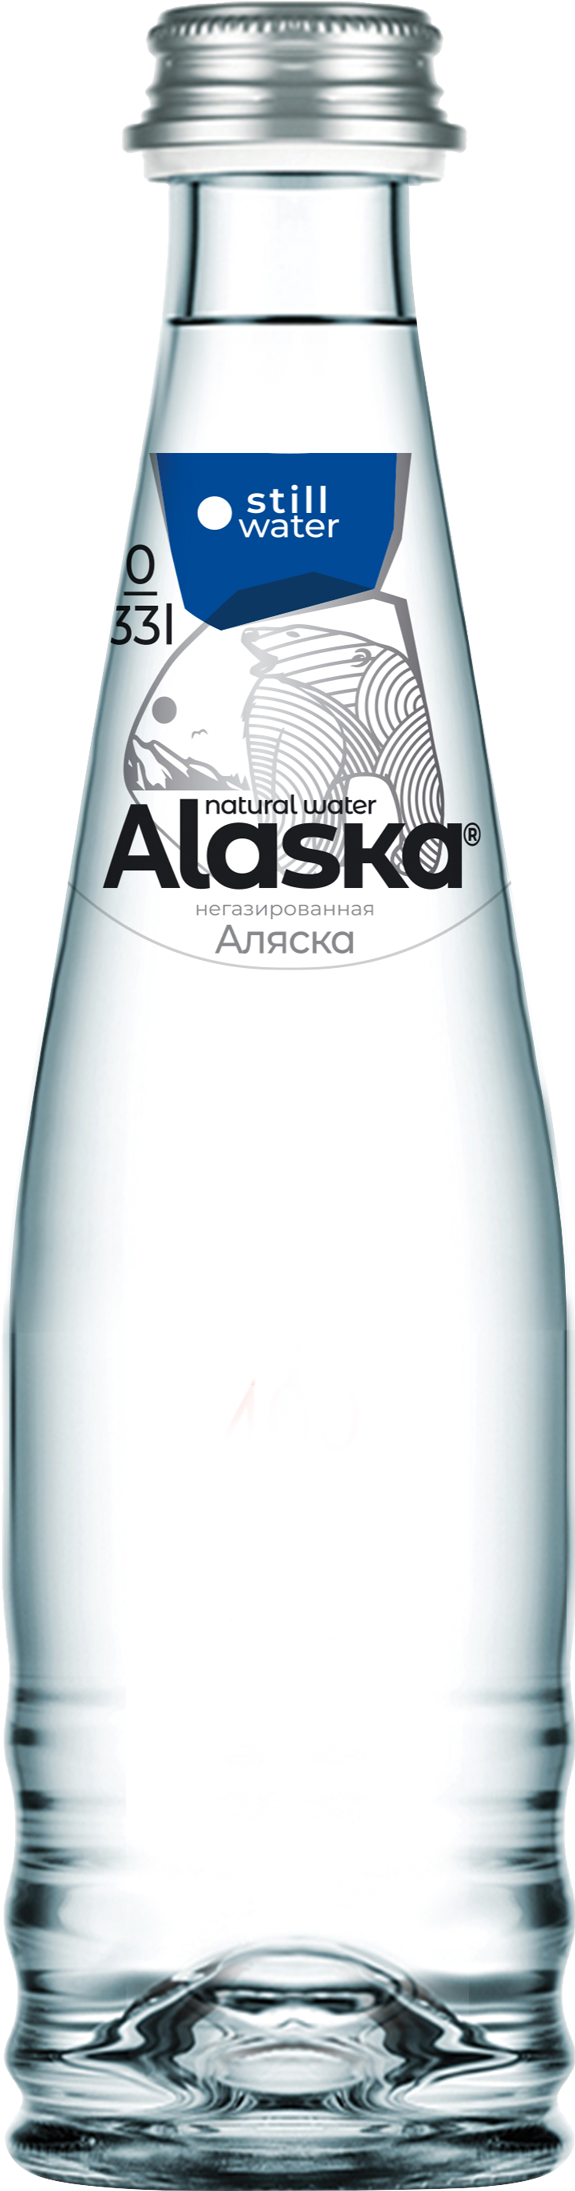 Вода питьевая Alaska негазированная, в стекле, 330 мл